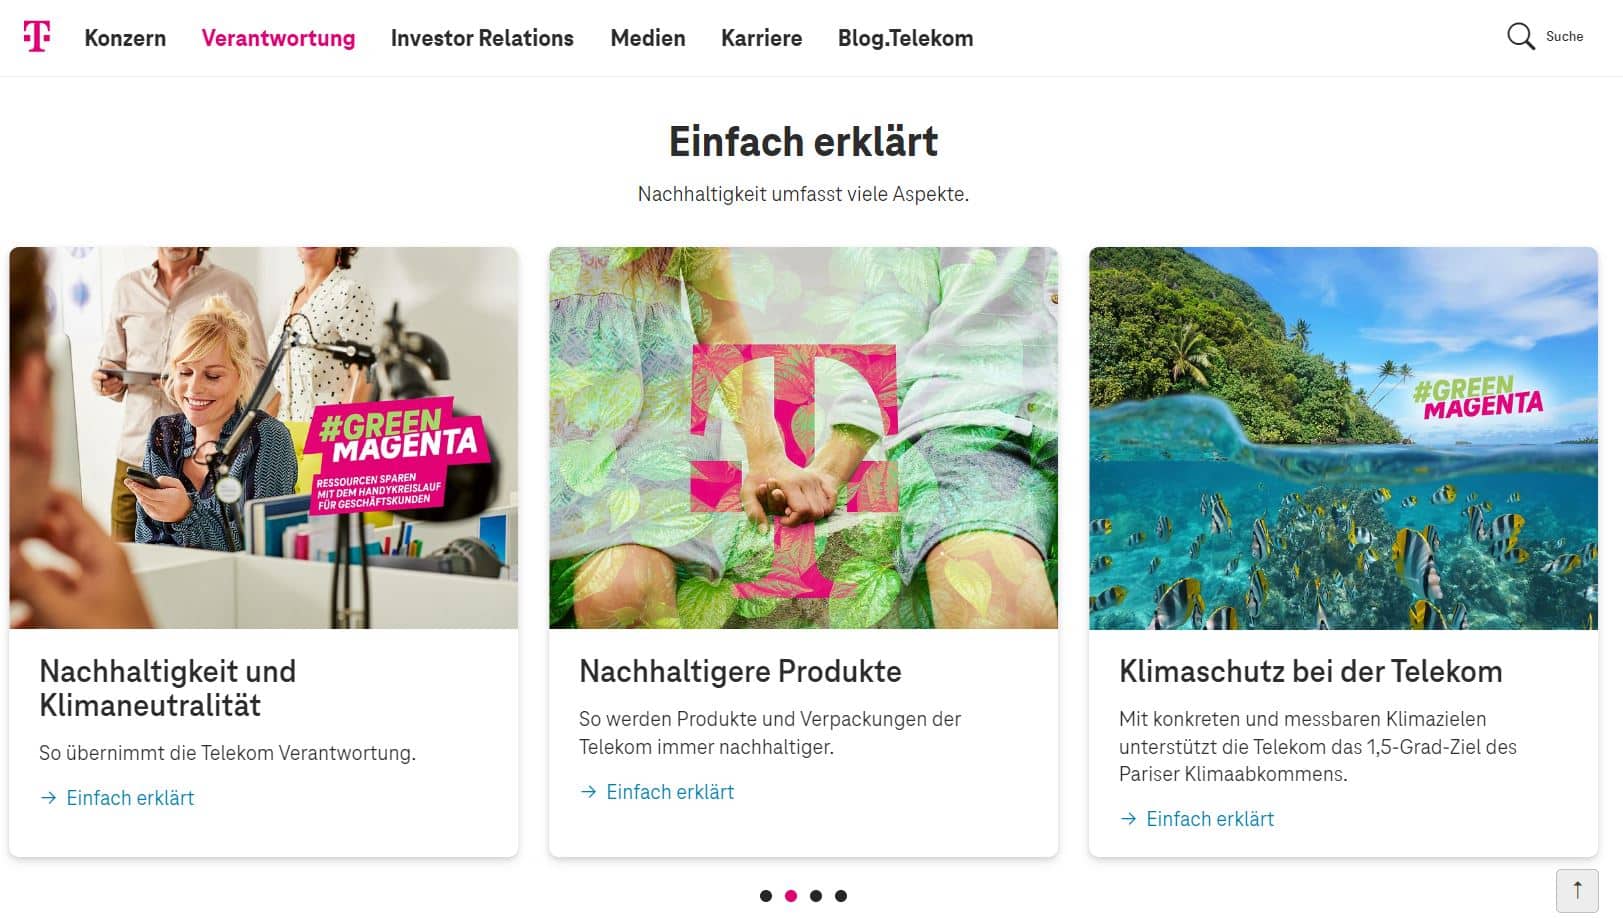 Die Deutsche Telekom erklärt auf ihrer Website umfangreich ihre Nachhaltigkeitsstrategie. Foto: Screenshot Deutsche Telekom.